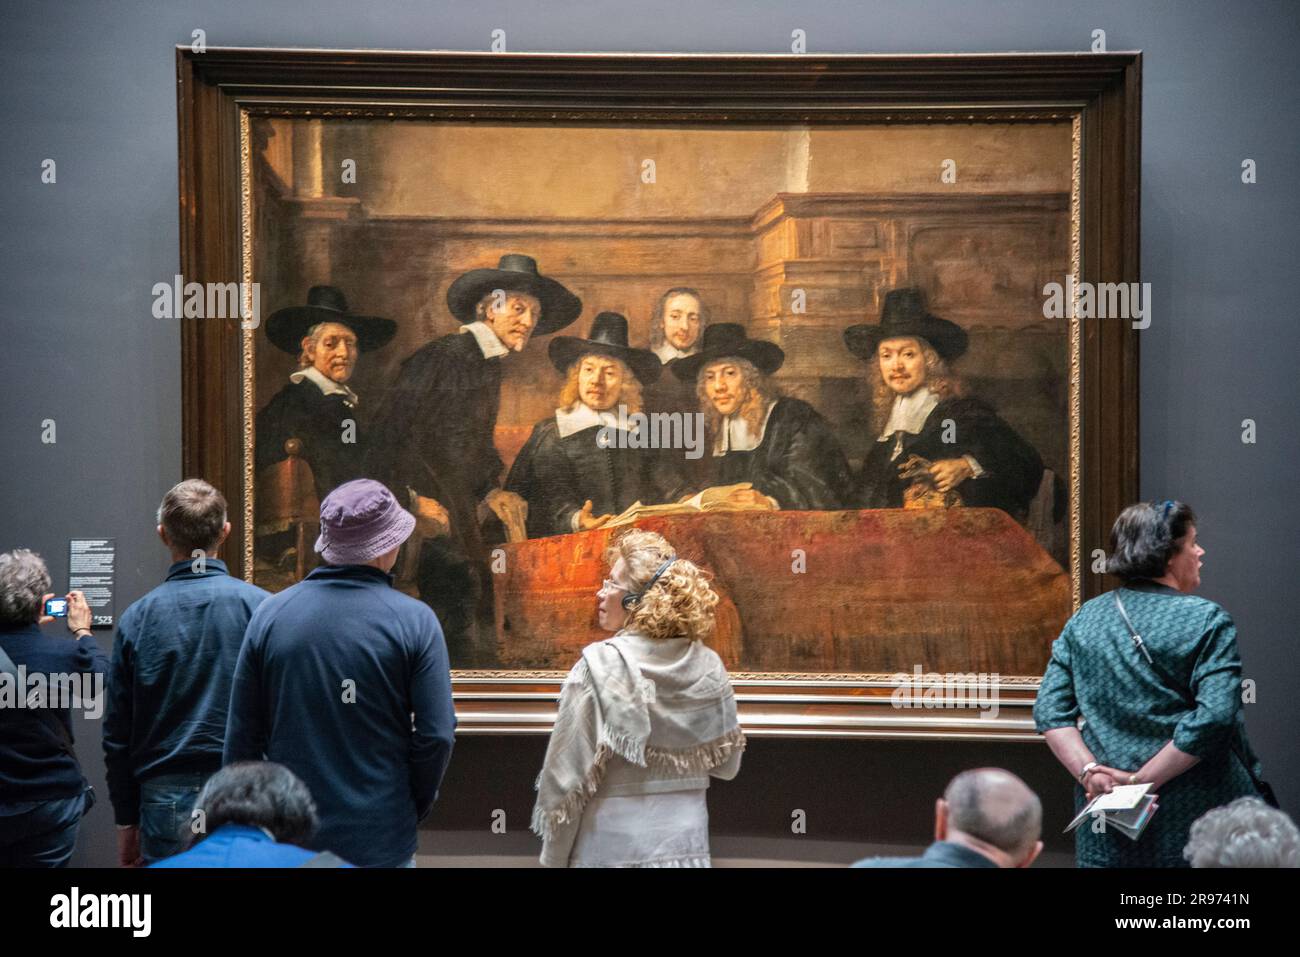 Besucher des Rijksmuseums in Amsterdam, die das Rembrandt-Gemälde namens Sampling Officials betrachten. Stockfoto